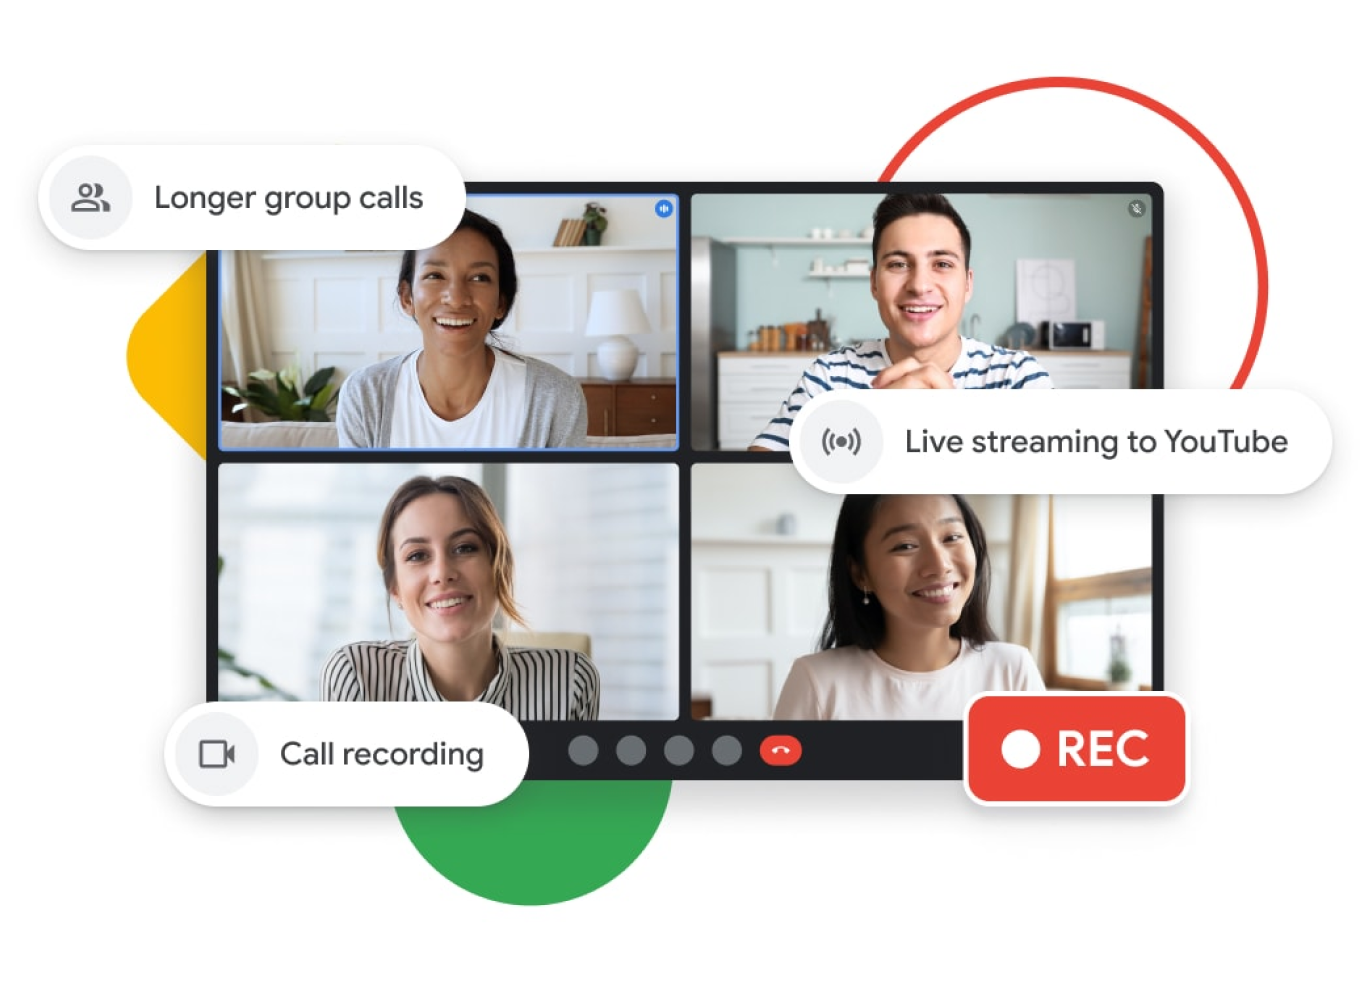 Vizuális ábrázolás egy Google Meet-hívásról, olyan funkciókkal, mint a hosszabb csoportos hívások, az élő közvetítés a YouTube-ra és a hívásrögzítés.